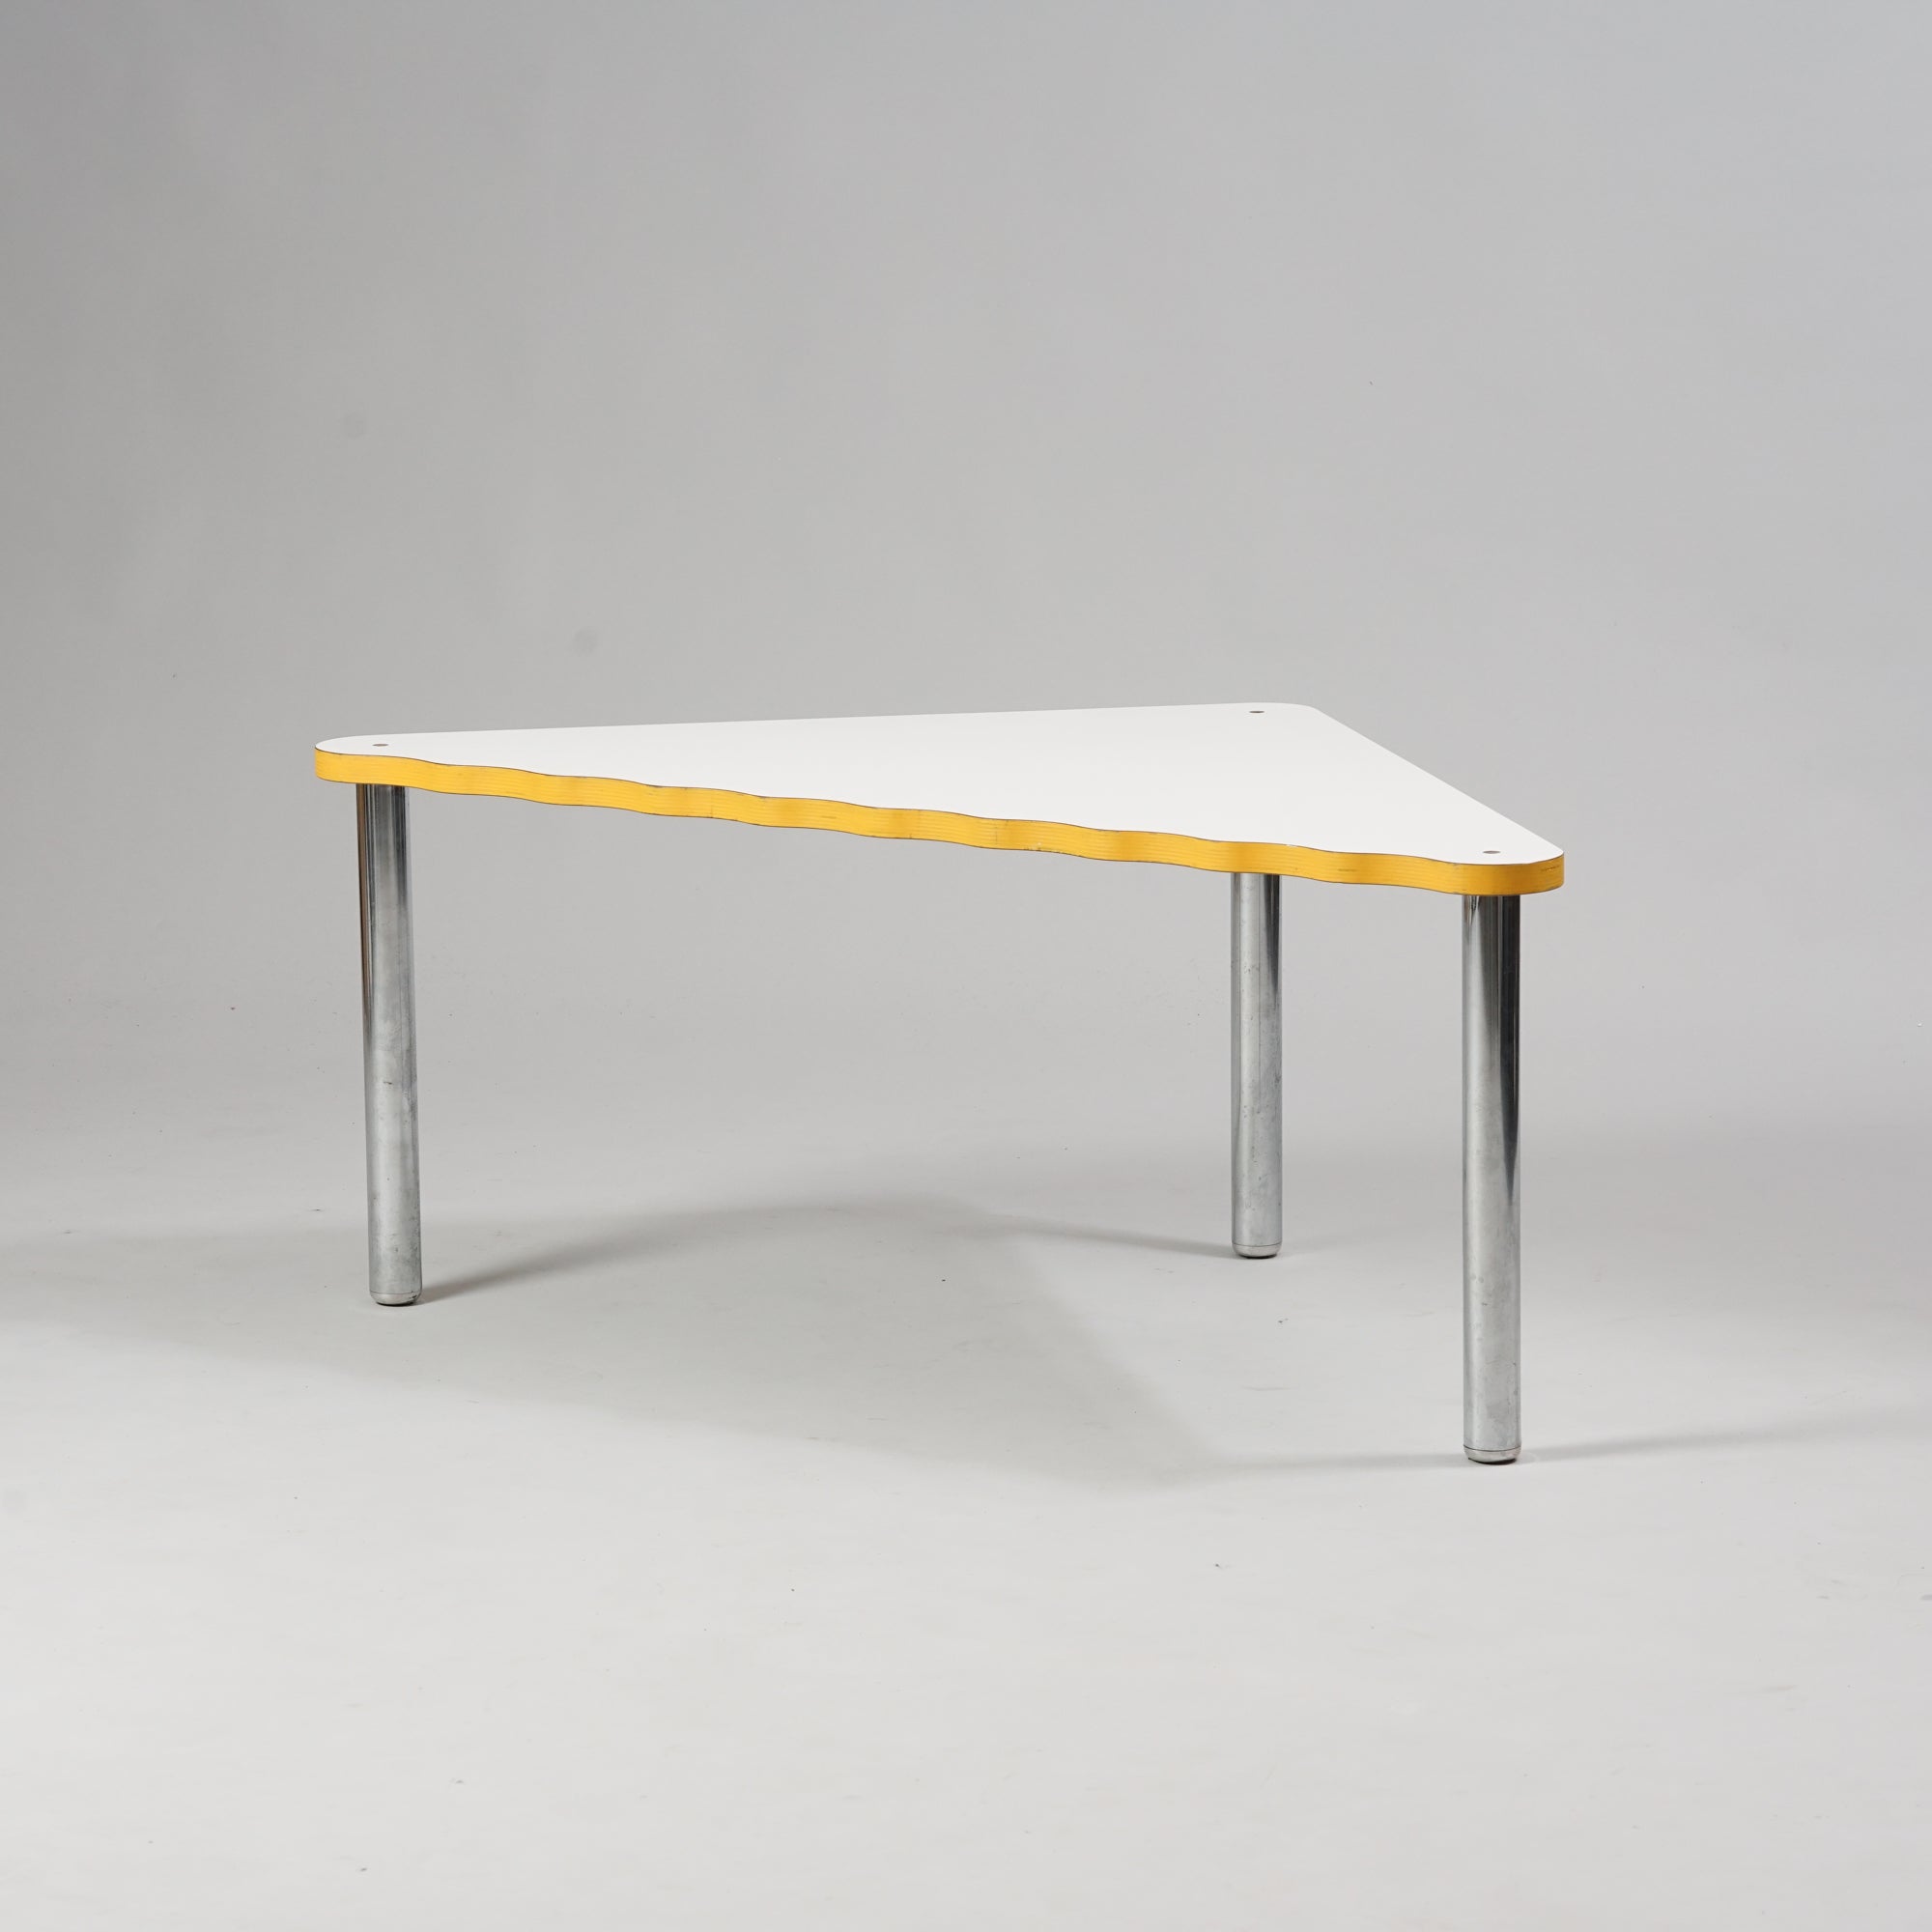 Kolmion muotoinen pöytä, jossa kromatut jalat ja valkoinen linoleumi päällyste. Kolmion pisin sivu on aaltoileva. Pöydän reunat ovat keltaiset.